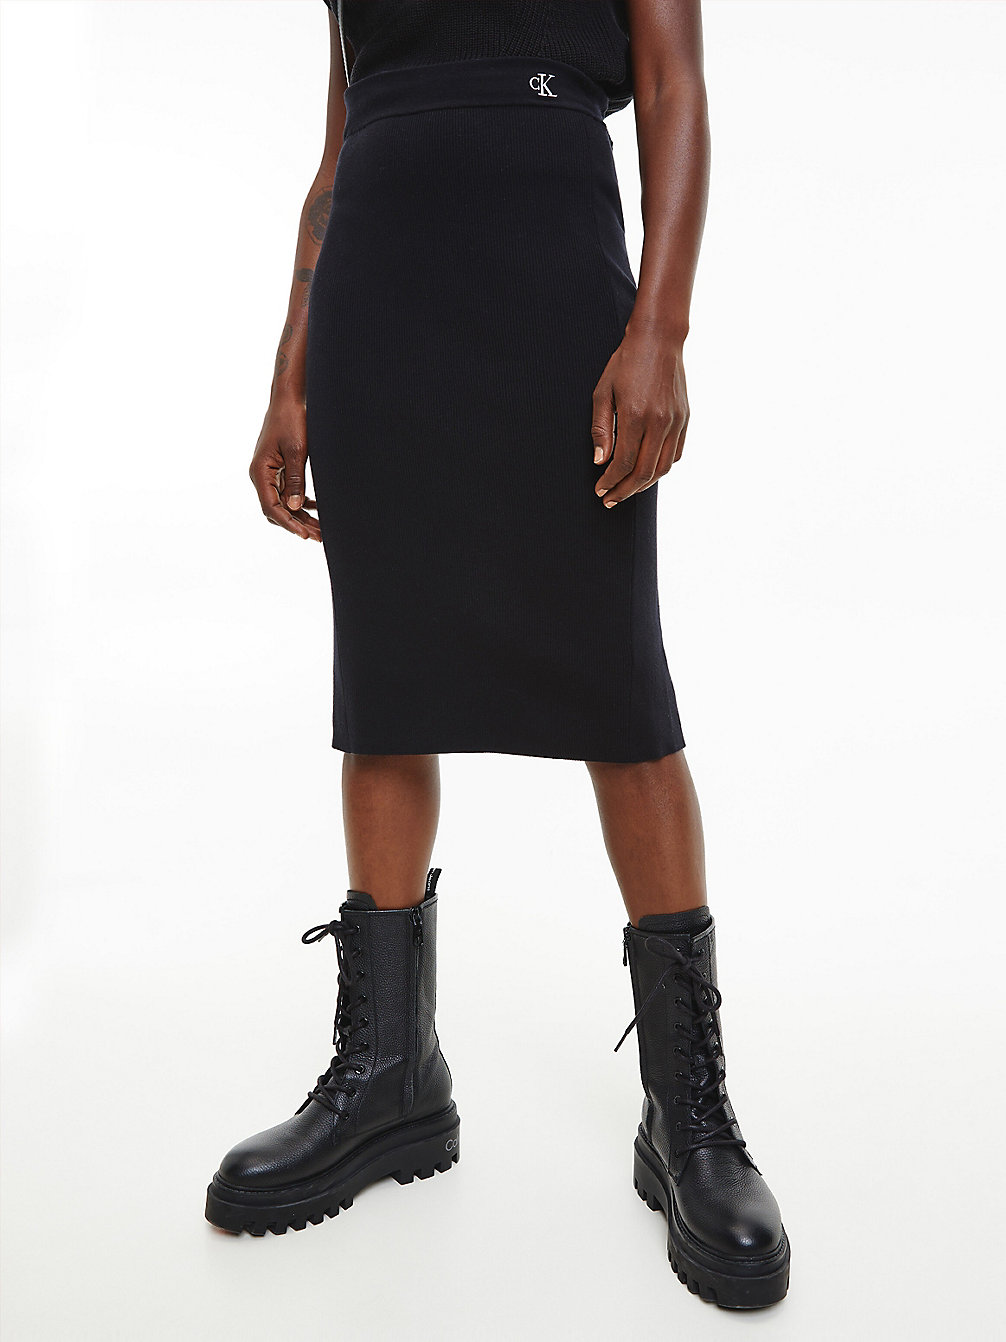 CK BLACK > Spódnica Midi Z Dzianiny Ze Stretchem > undefined Kobiety - Calvin Klein